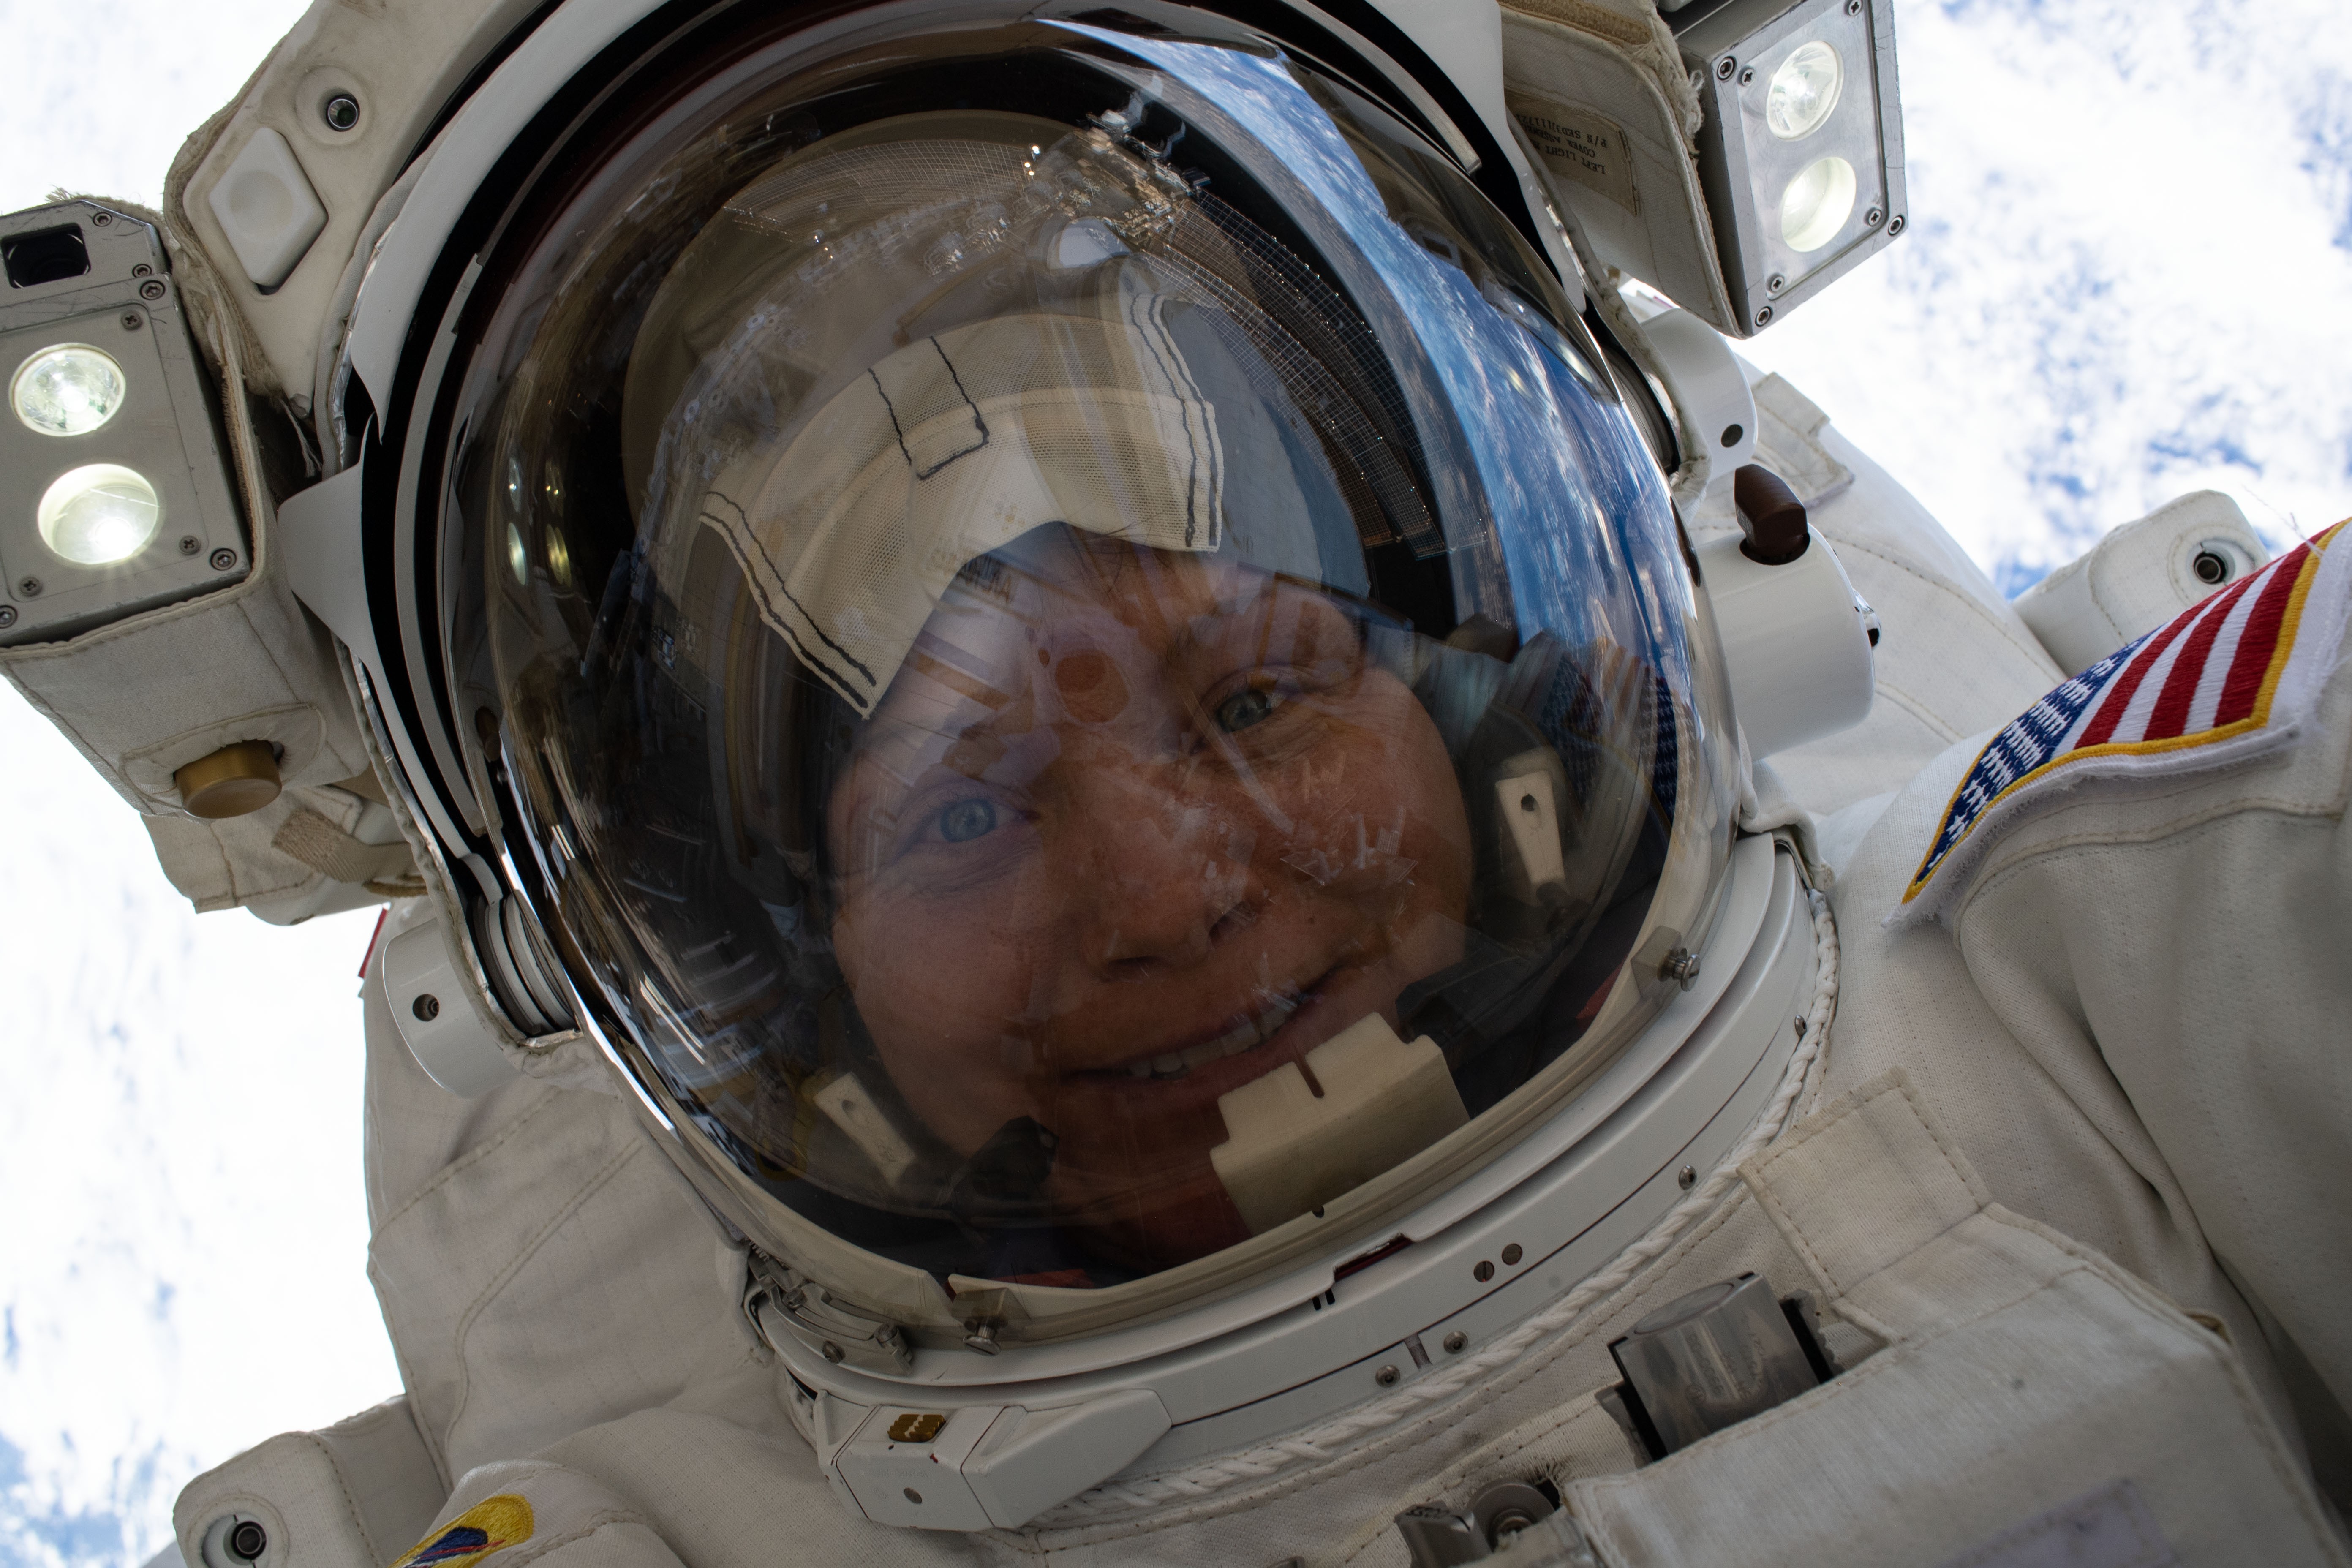 Selfie tirada pela astronauta durante sua primeira caminhada, em 22 de março de 2019 (Foto: NASA)